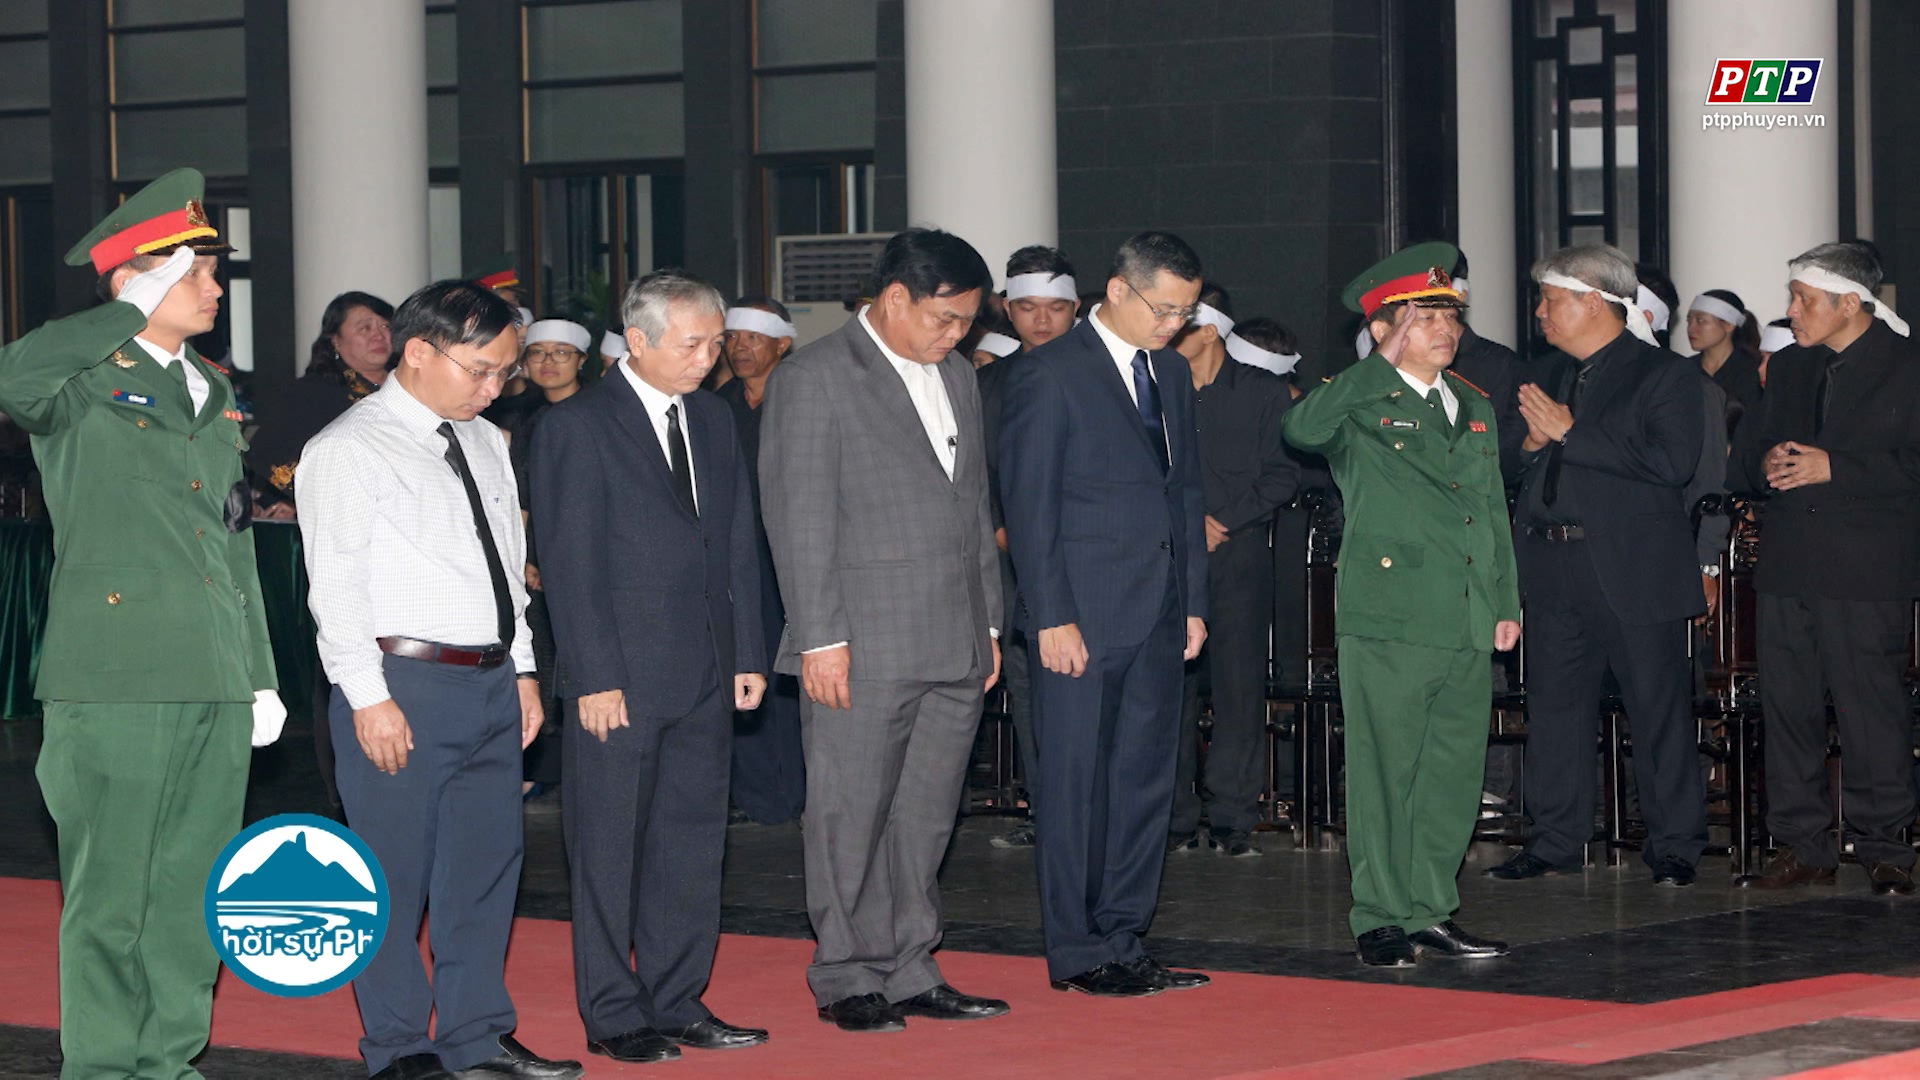 Đoàn đại biểu tỉnh Phú Yên viếng nguyên Tổng Bí thư Đỗ Mười